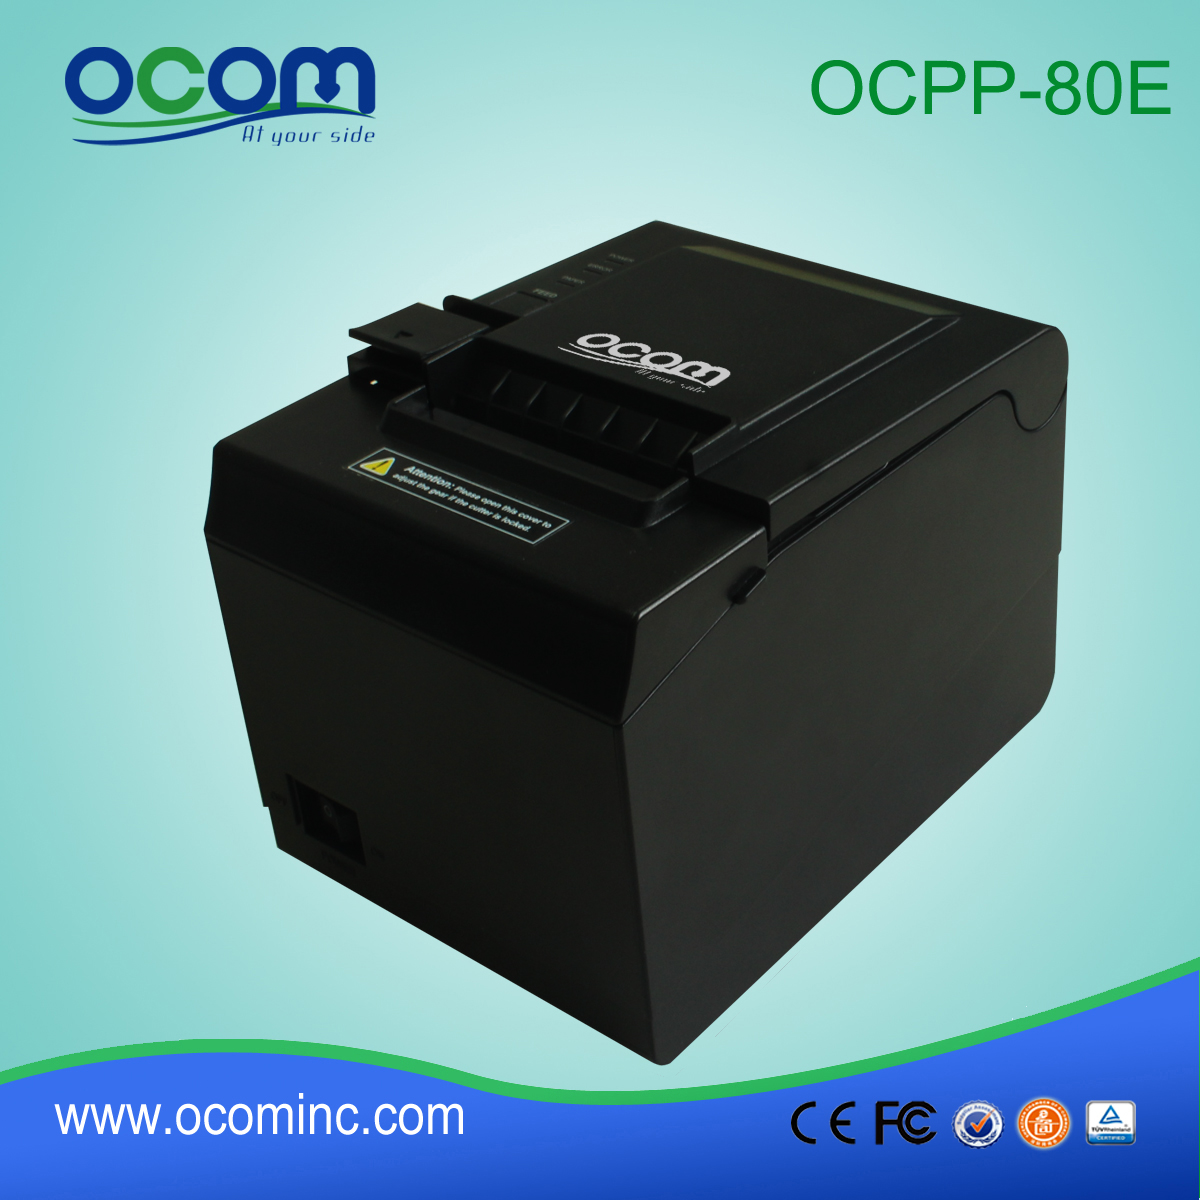 OCPP-80E 80mm autobus bilet drukarki epson kodów kreskowych drukarki termicznej